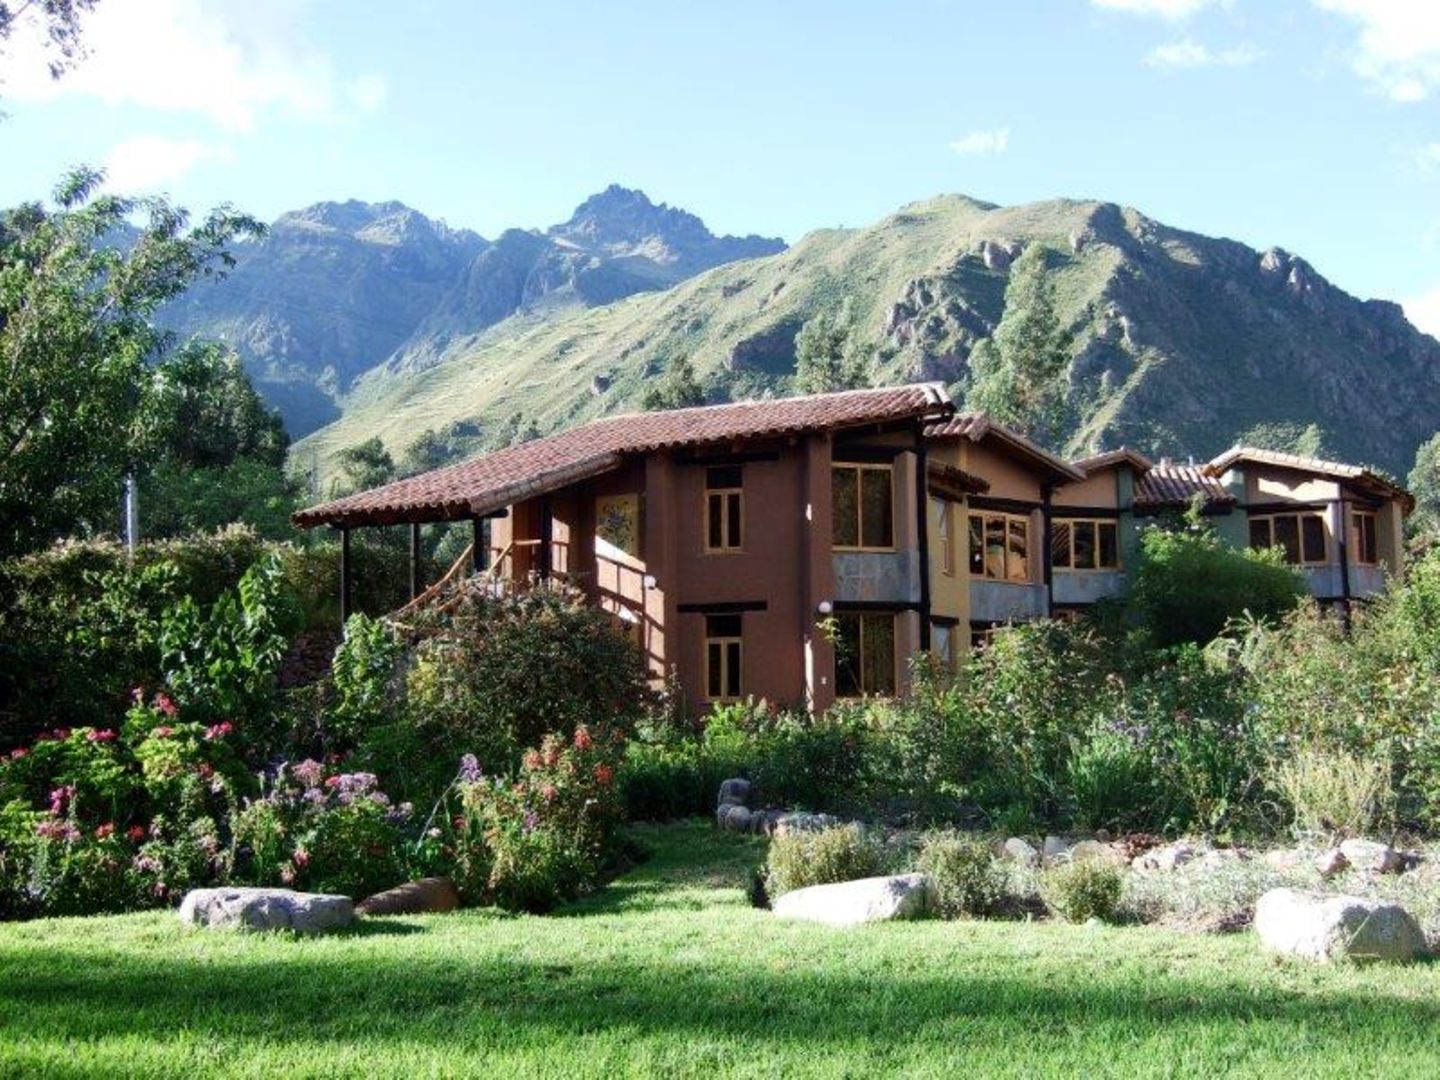 Wllka T’ika ist ein luxuriöses Garten-Retreat in Perus Heiligem Tal zwischen Cusco und Aguas Calientes (Machu Picchu). Das Anwesen wurde in Harmonie mit seiner natürlichen Umgebung von der Eigentümerin zusammen mit Einheimschen erbaut, die heute noch dort arbeiten. Die meisten Zutaten der vegetarischen Gourmet-Küche wachsen in den umliegenden Gärten, die auch für Yoga und Meditation genutzt werden können (DZ ab 170 Euro).      Yoga- und Meditation-Studios  Willka T’ika verfügt über zwei Hallen für Yoga und Meditation. Die Studios sind vom Sonnenlicht durchflutet und können bis zu 55 Menschen aufnehmen. O  Aktivitäten  Die umgebenden Berge bieten sehr gute Möglichkeiten zum Wandern, Reiten, River Rafting, kulturellen Unternehmungen und vielem mehr. Zahlreiche spirituelle Plätze der Inkas befinden sich in der Umgebung von Willka T’ika und machen den Ort zu einem perfekten Ausgangspunkt, um das Heilige Tal zu besuchen.